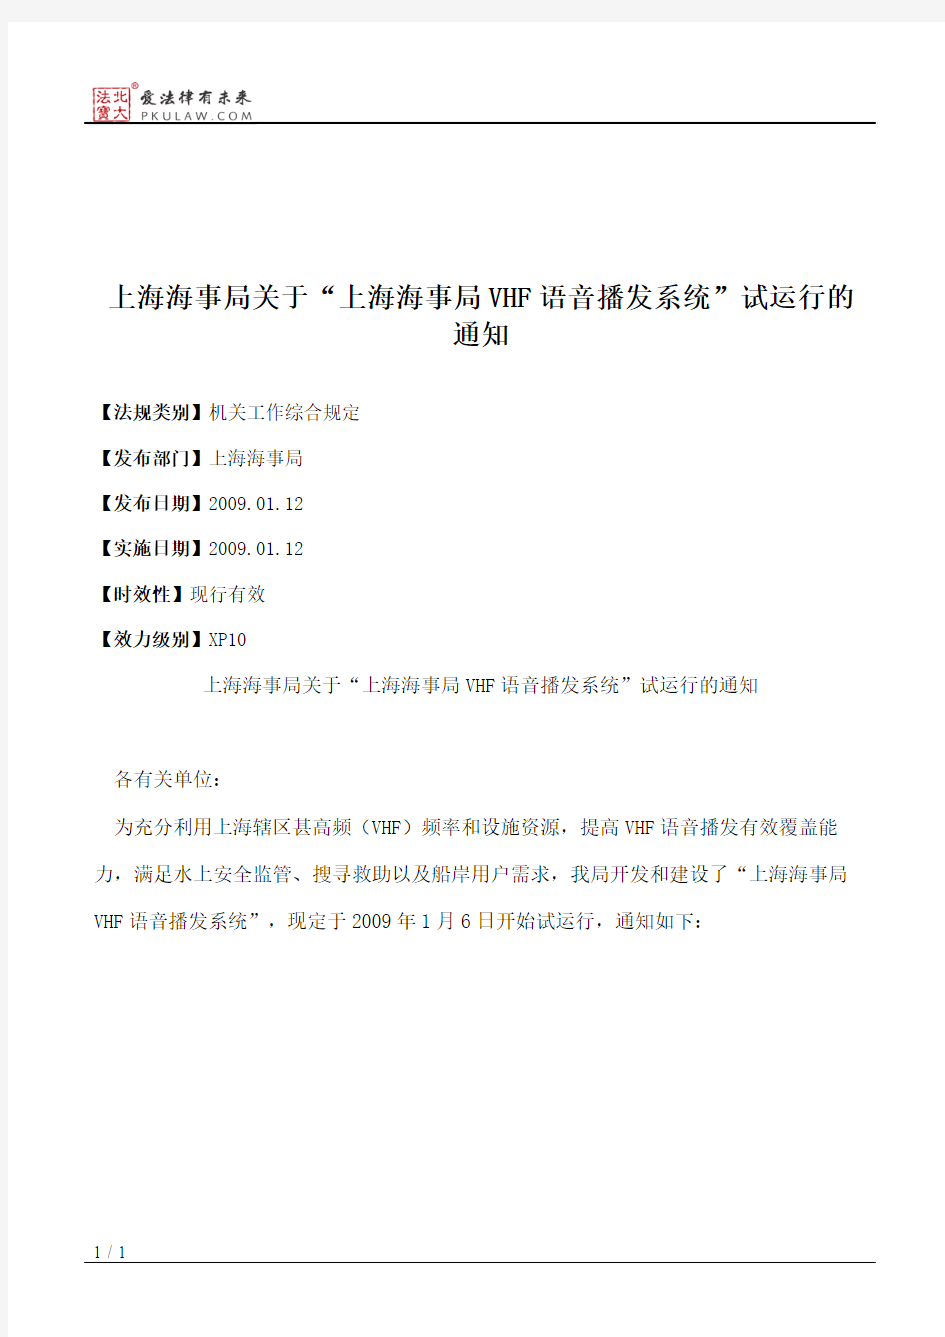 上海海事局关于“上海海事局VHF语音播发系统”试运行的通知